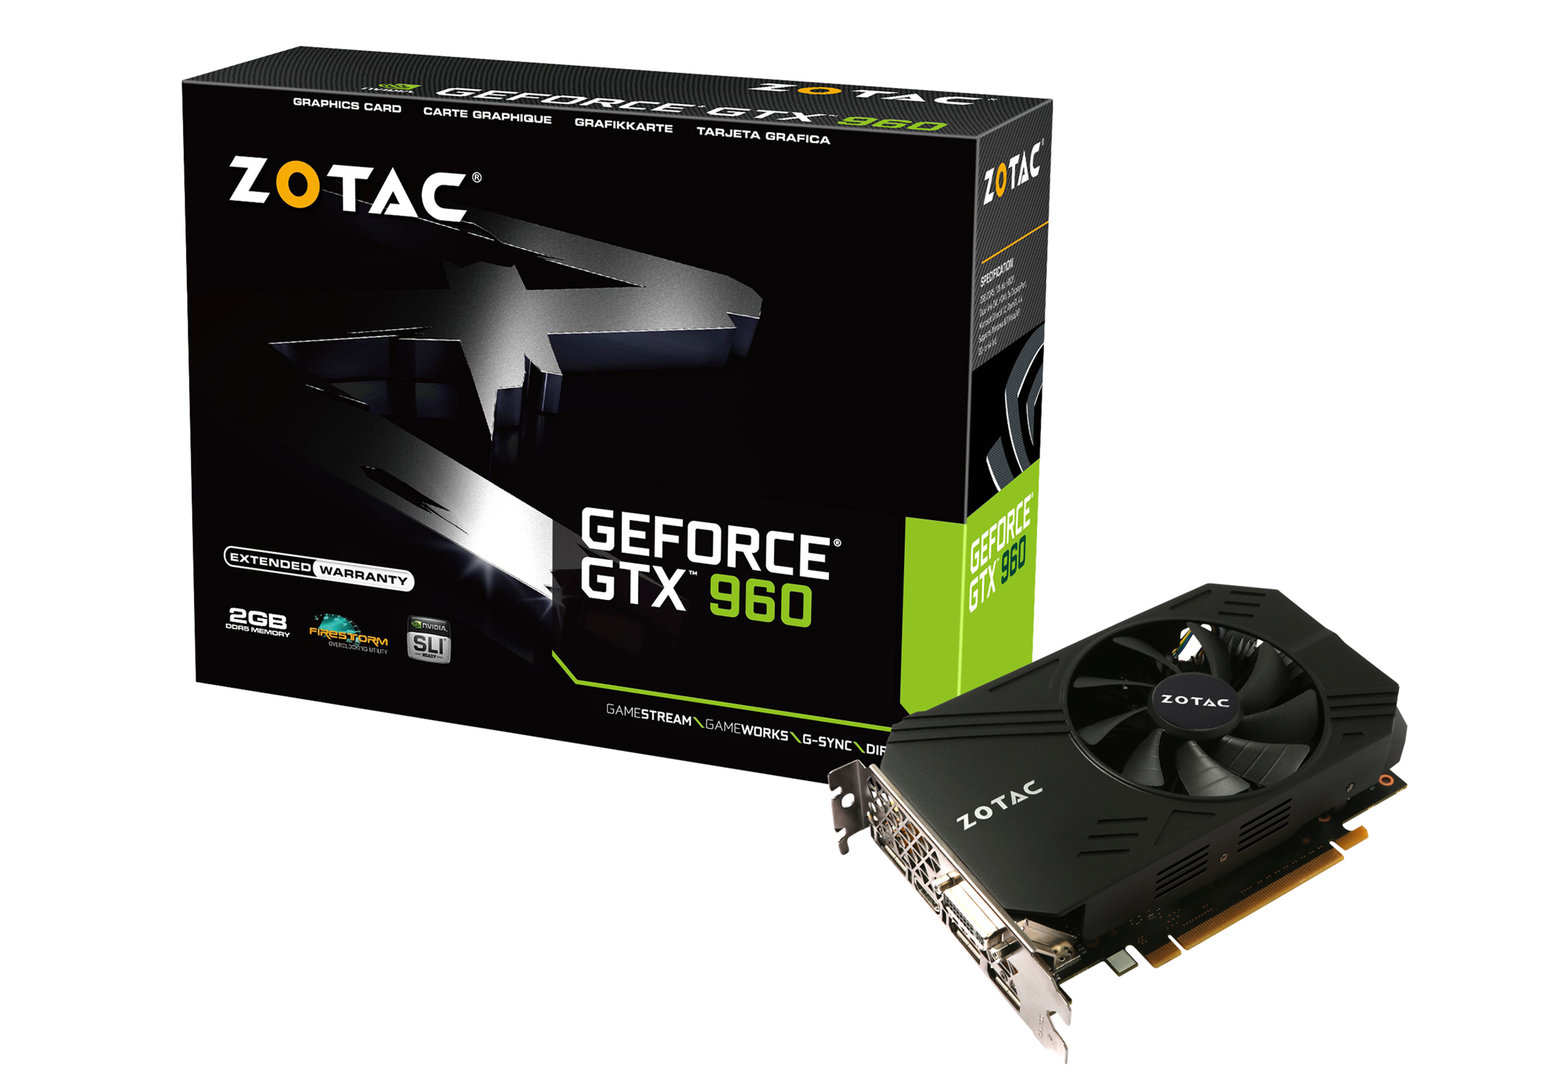 Zotac GeForce GTX 960 ITX Compact